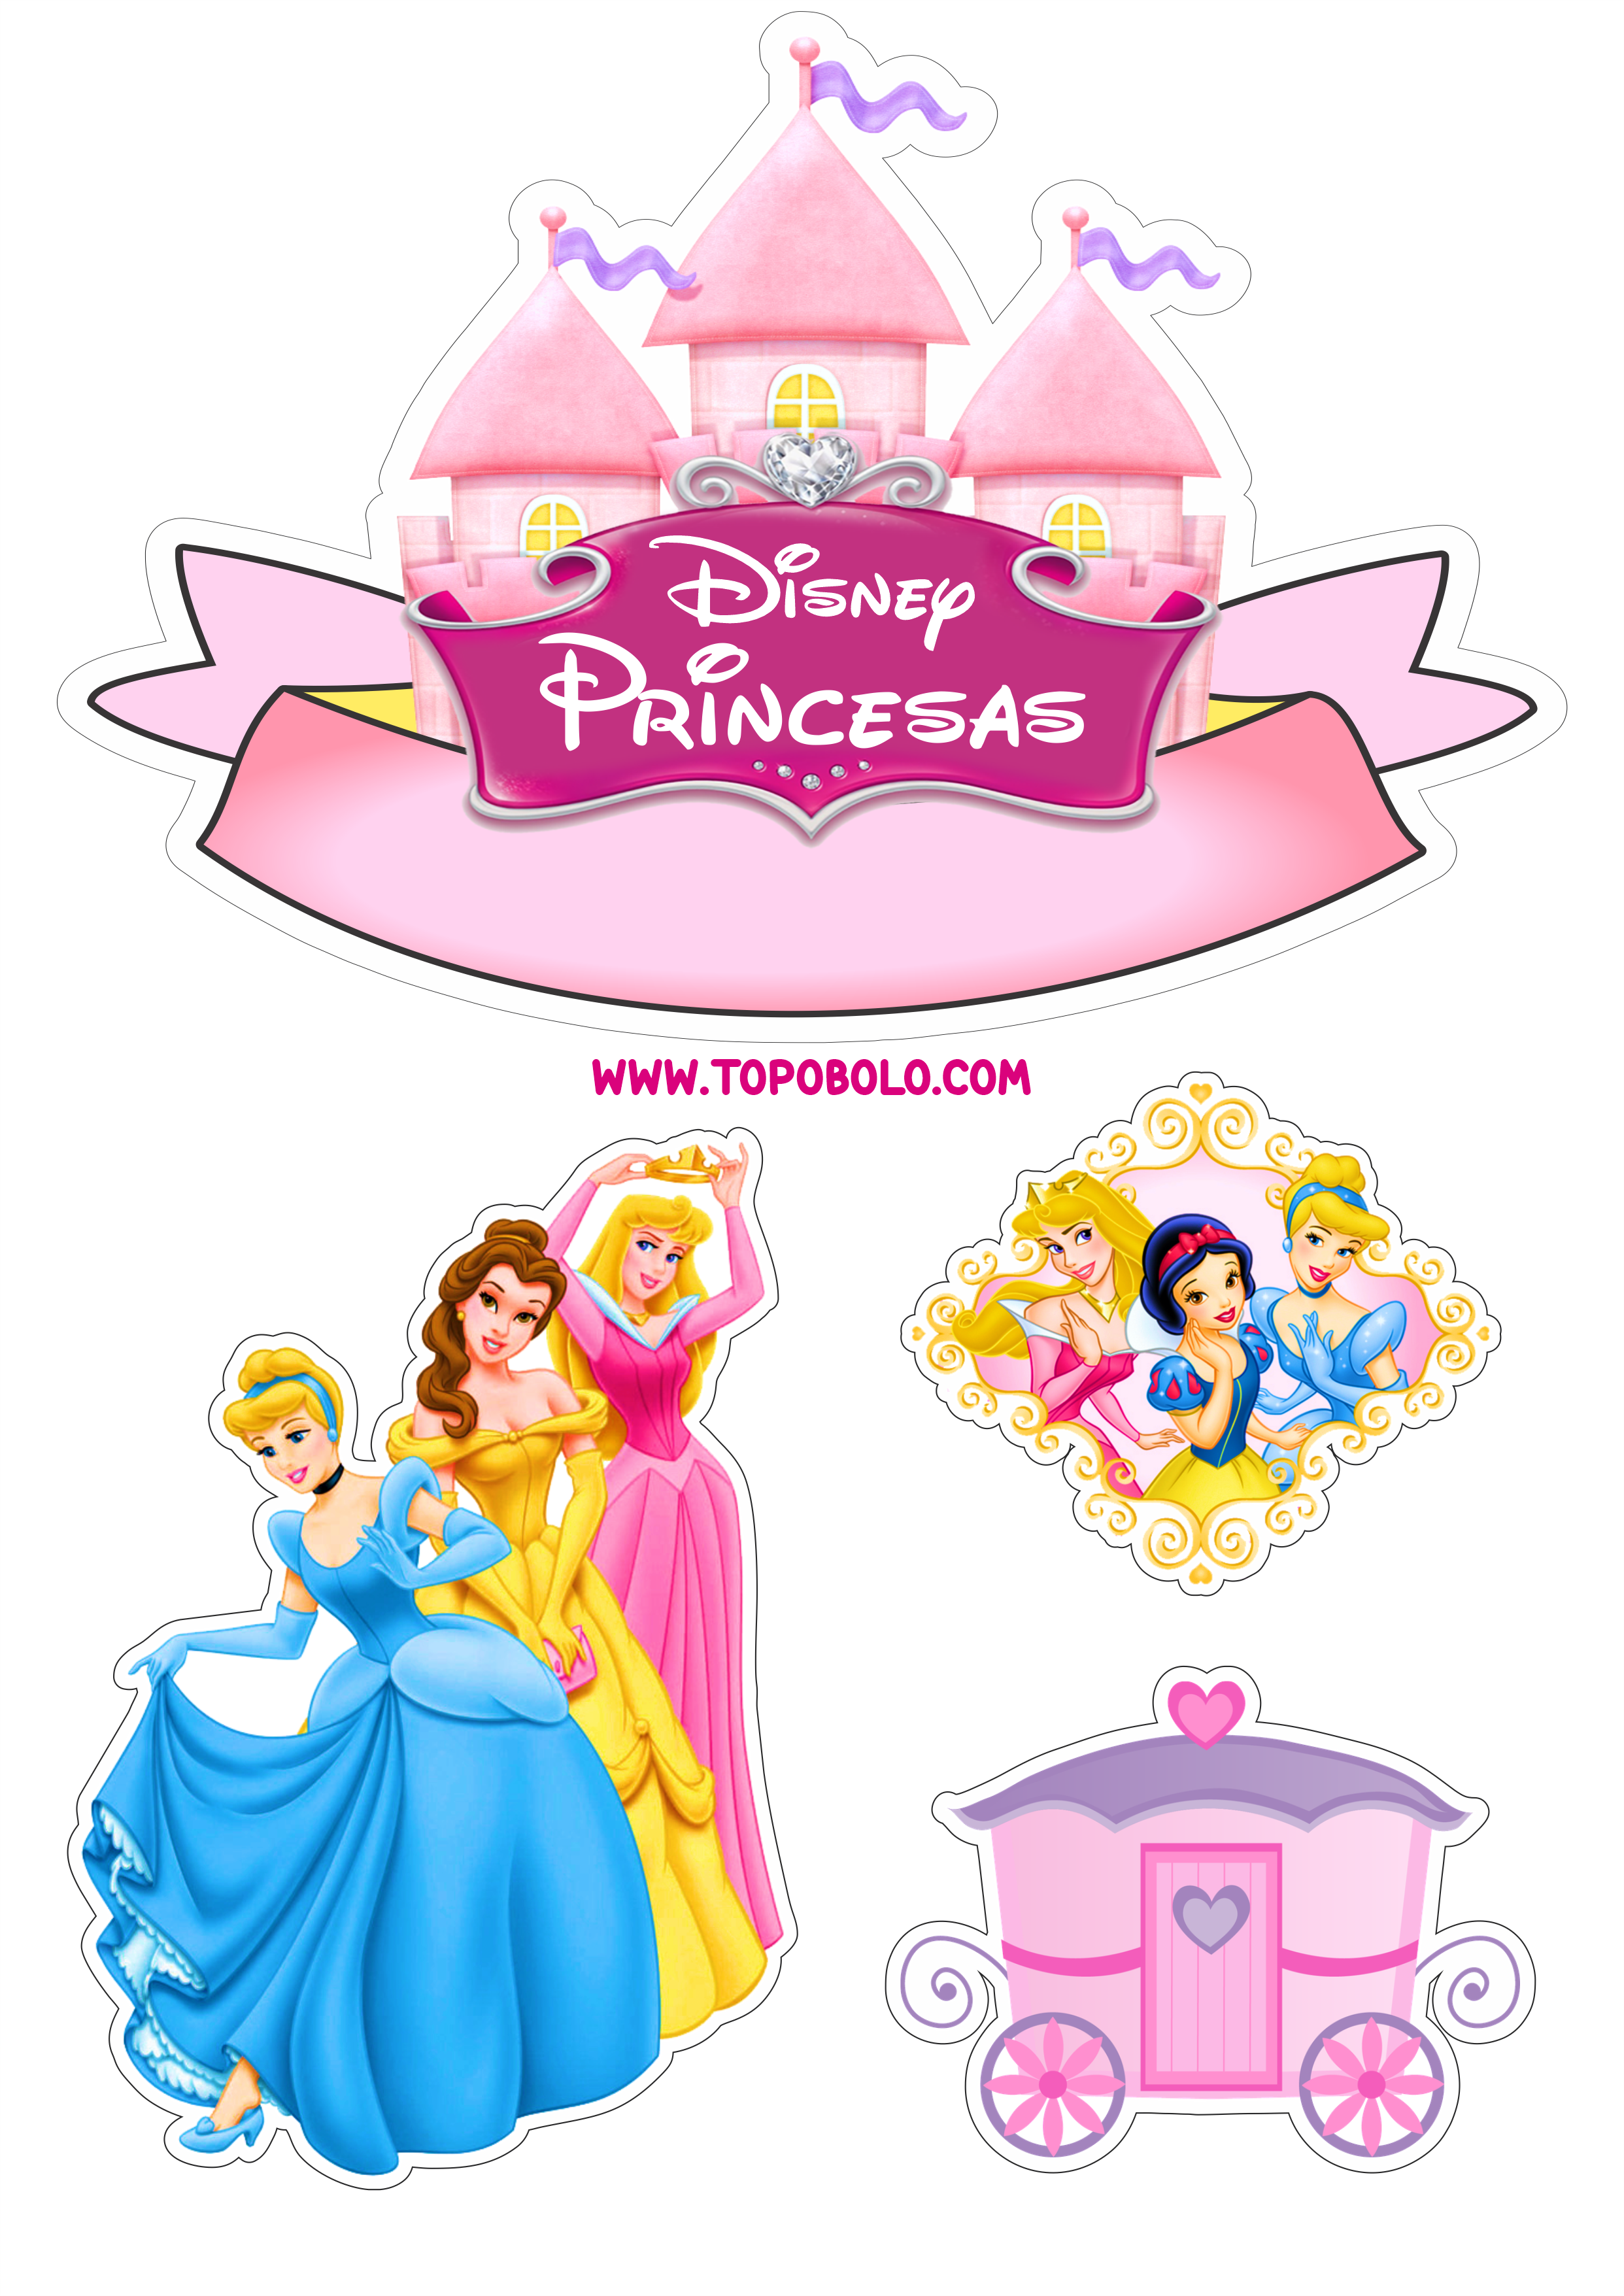 Princesas Disney topo de bolo pronto para imprimir aniversário infantil papelaria criativa png